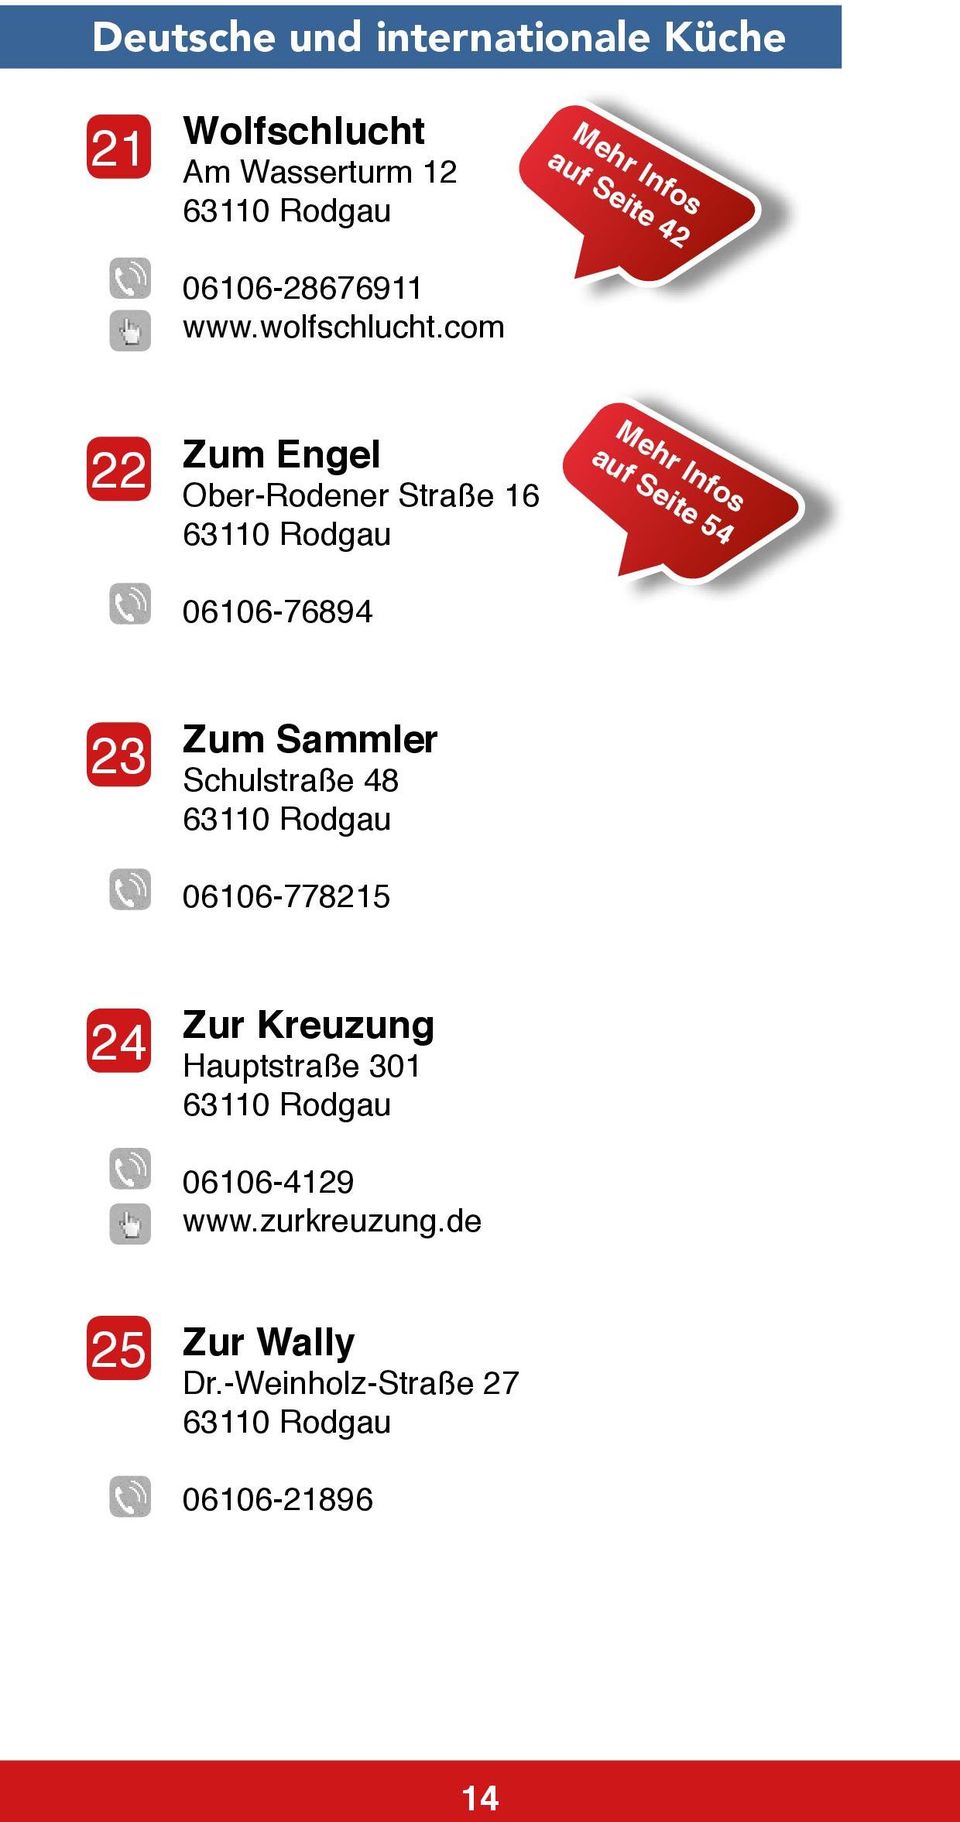 com Mehr Infos auf Seite 42 22 Zum Engel Ober-Rodener Straße 16 06106-76894 Mehr Infos